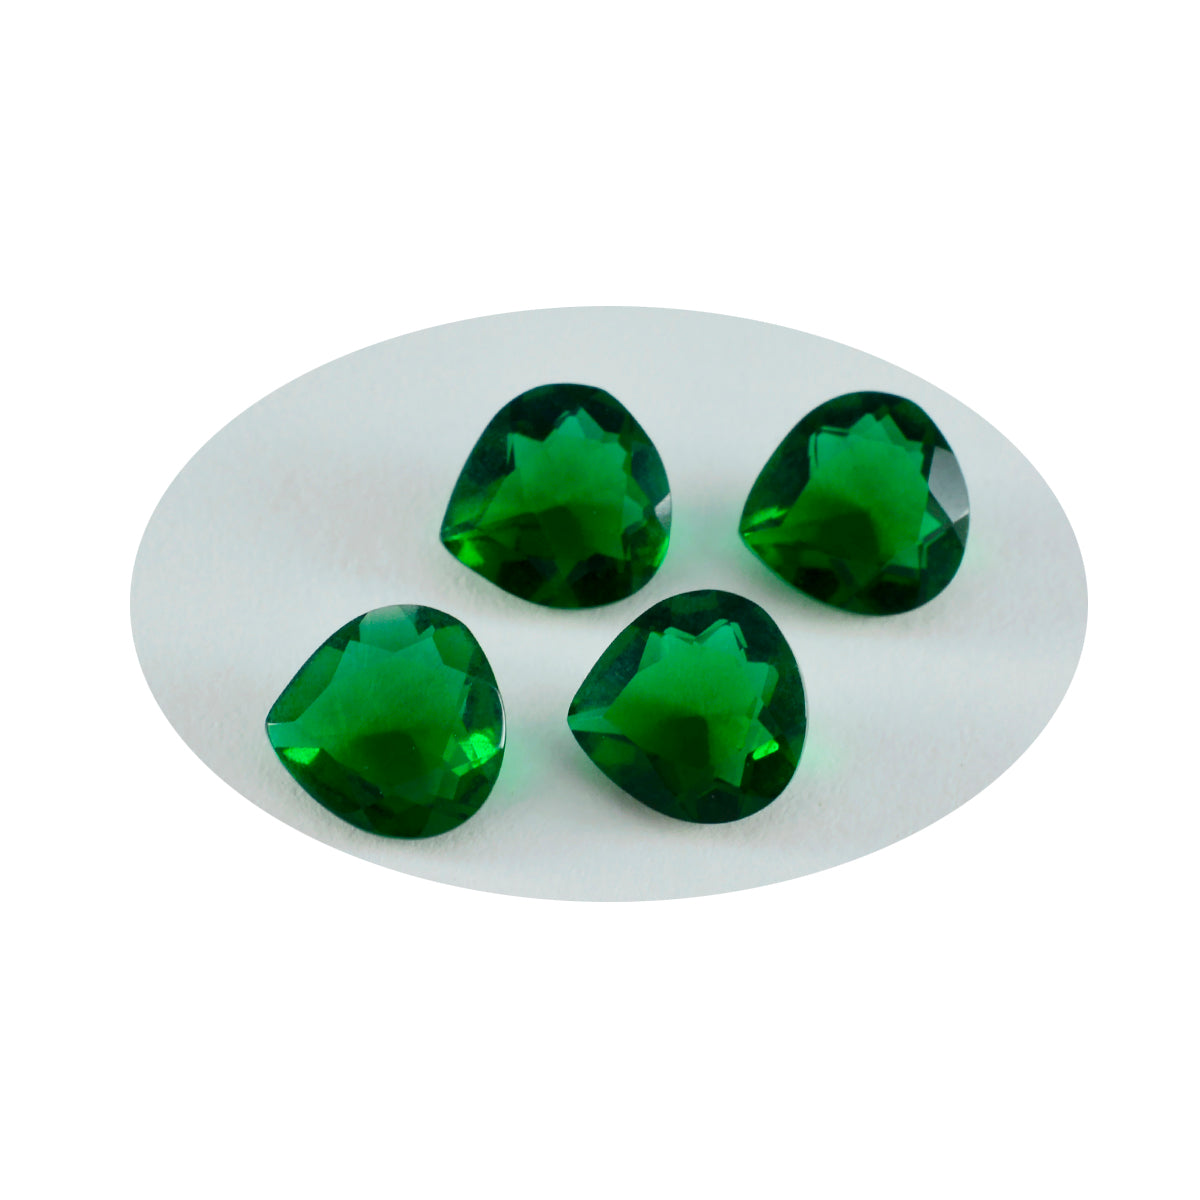 Riyogems 1 pieza Esmeralda verde CZ facetada 7x7mm forma de corazón gemas de calidad encantadoras